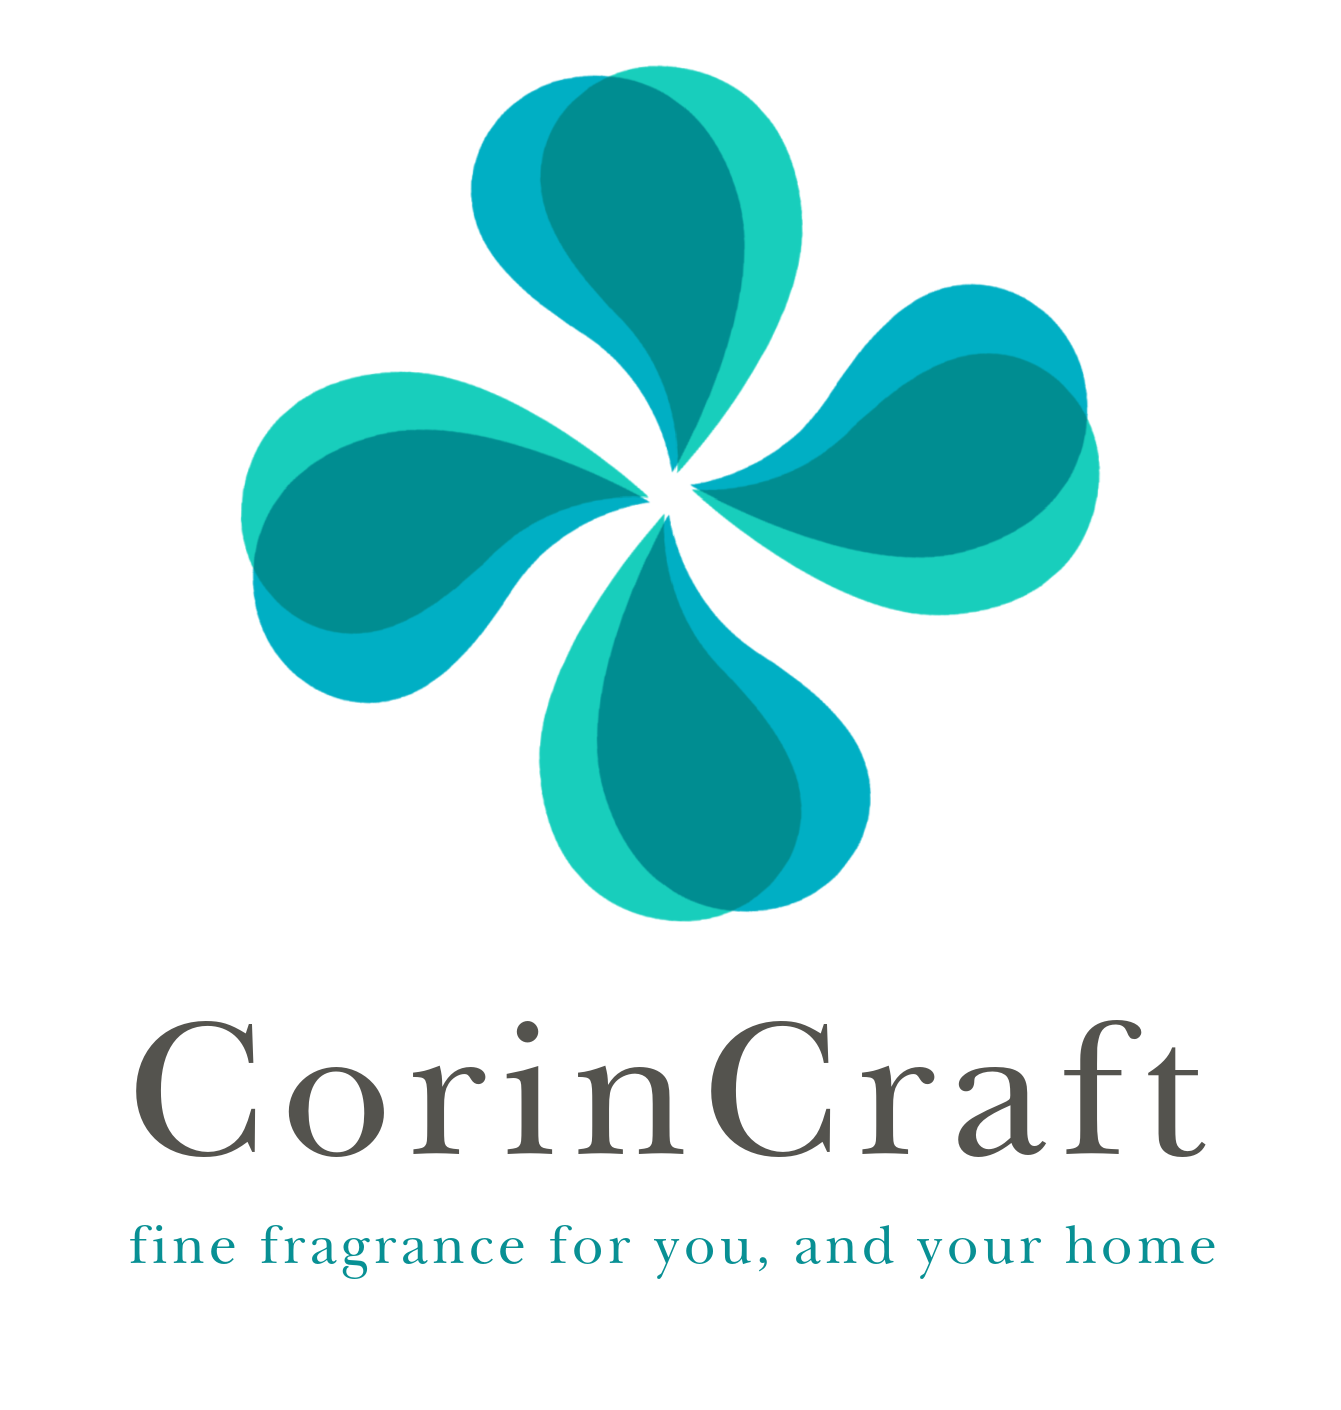 Corincraft Ltd